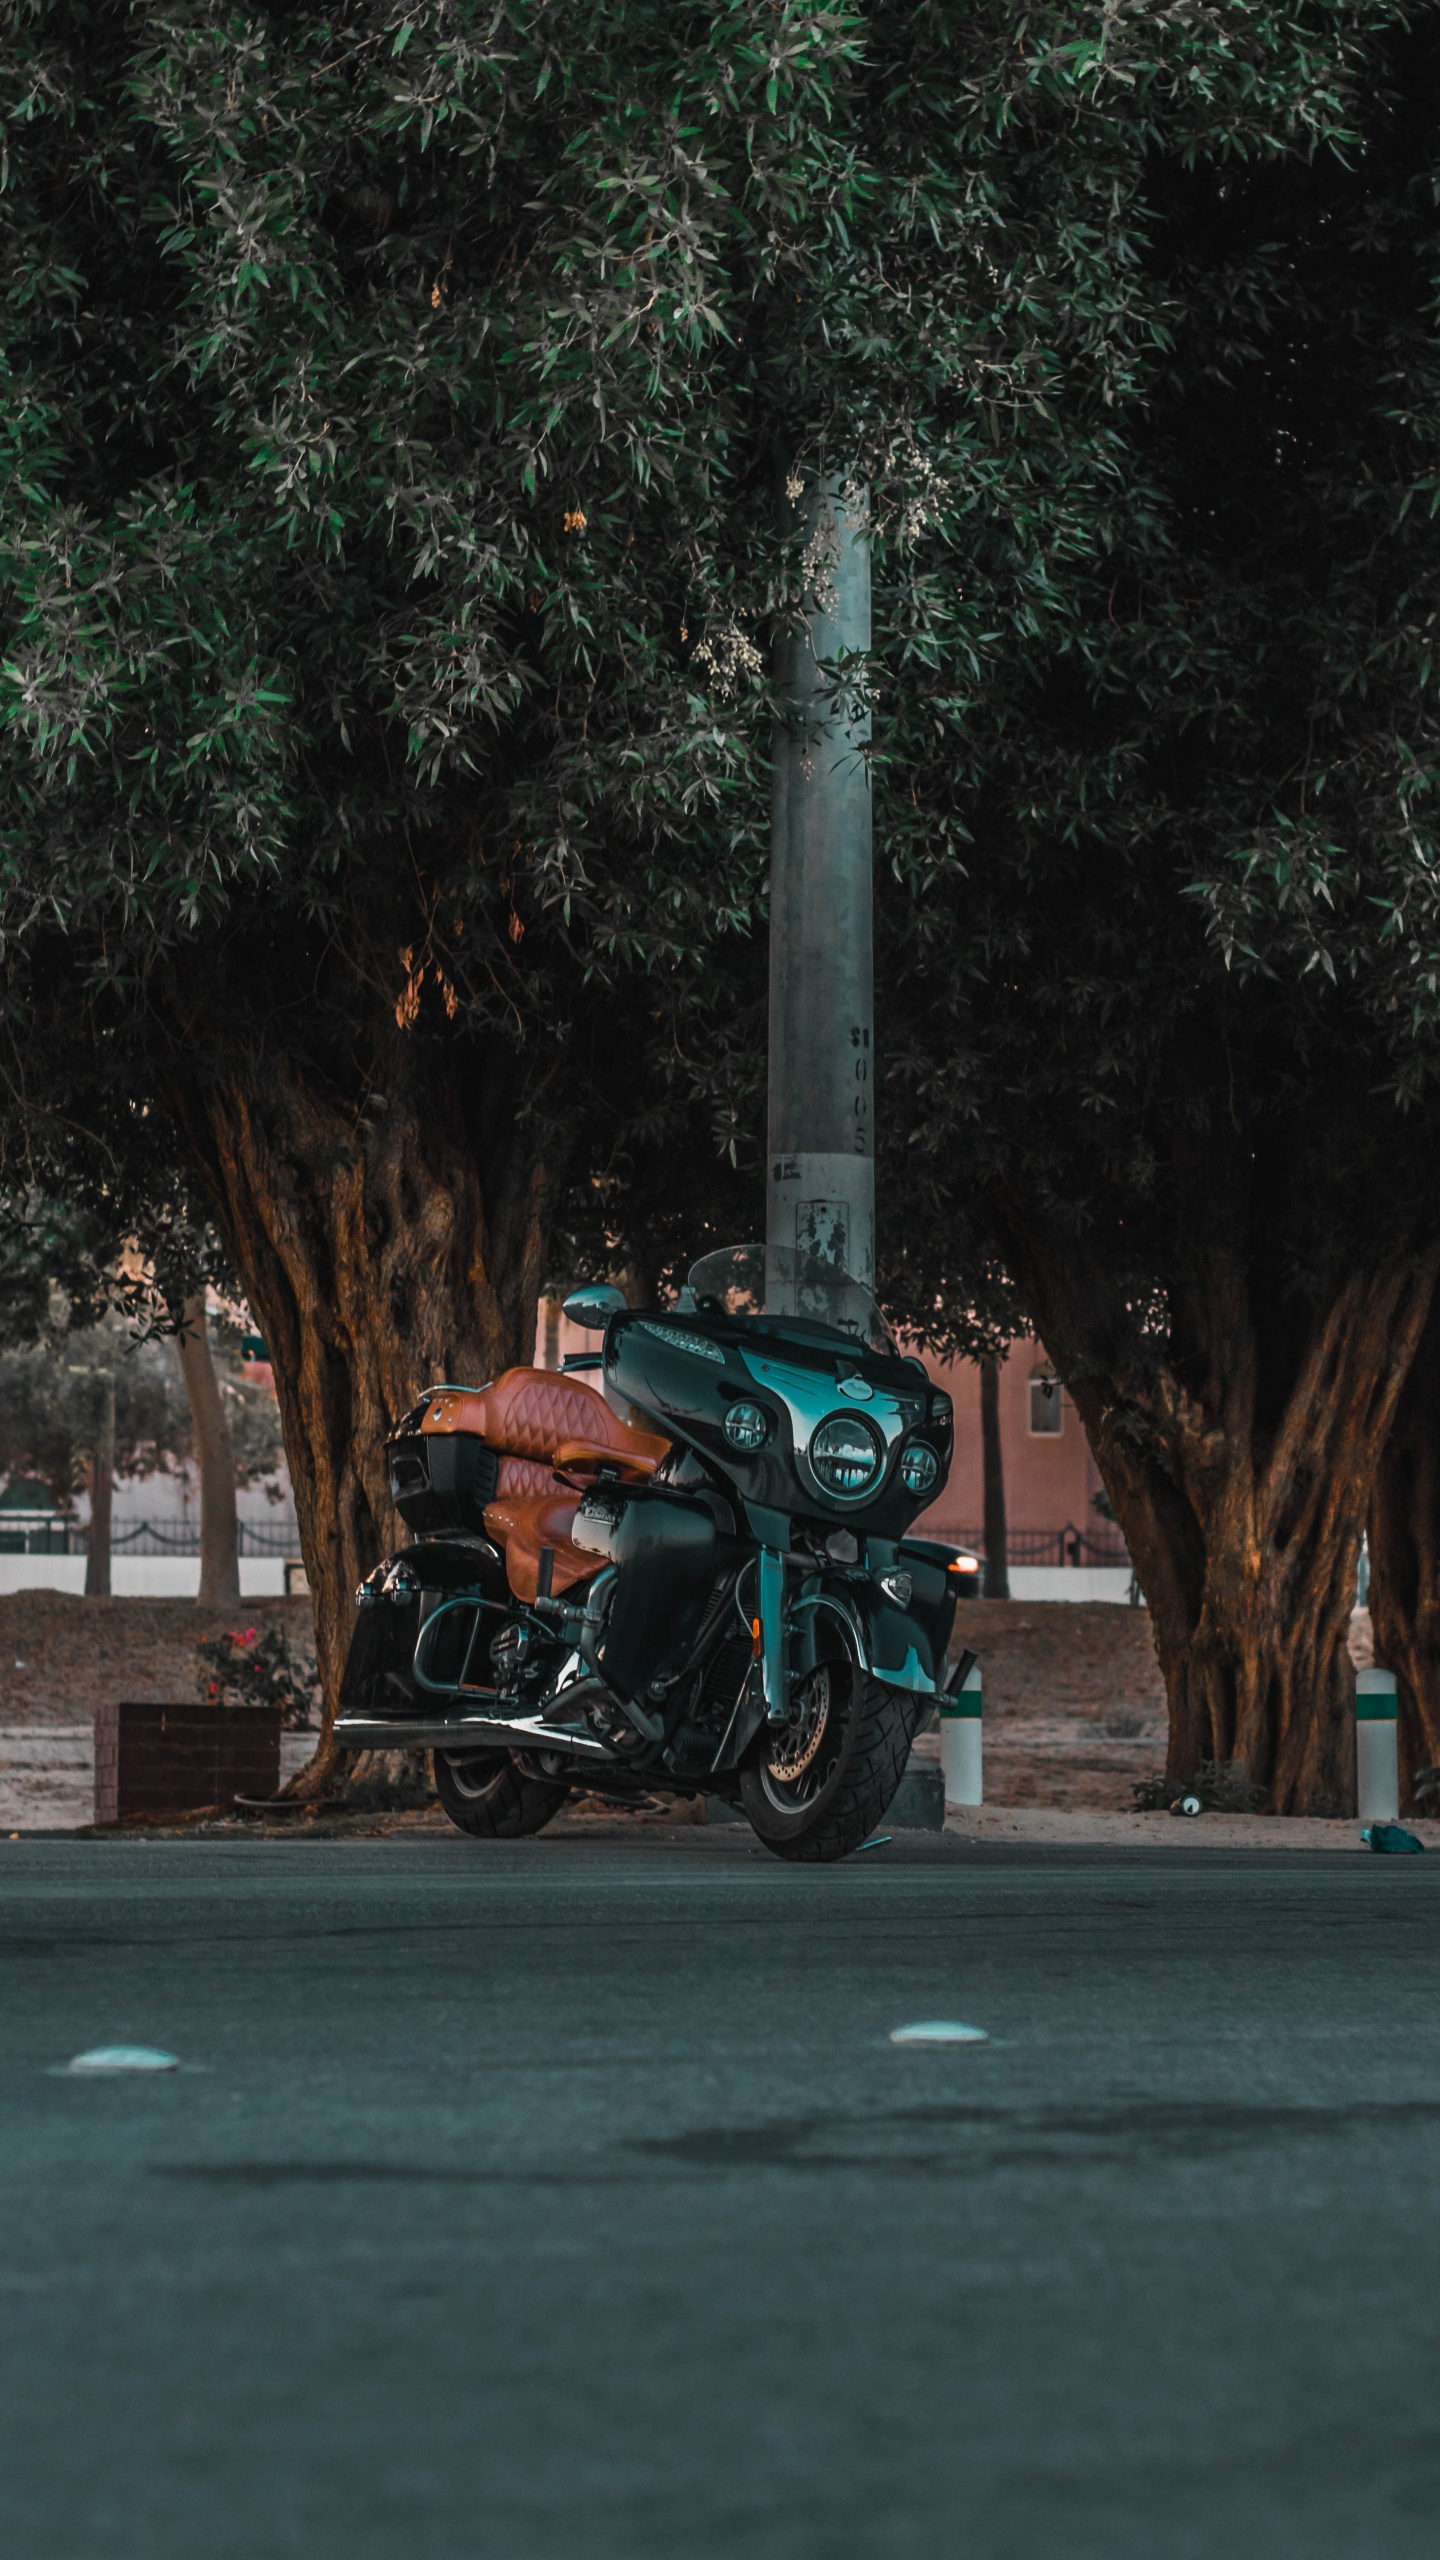 Motocicleta Verde y Negra Estacionada en la Carretera de Hormigón Gris Durante el Día. Wallpaper in 1440x2560 Resolution